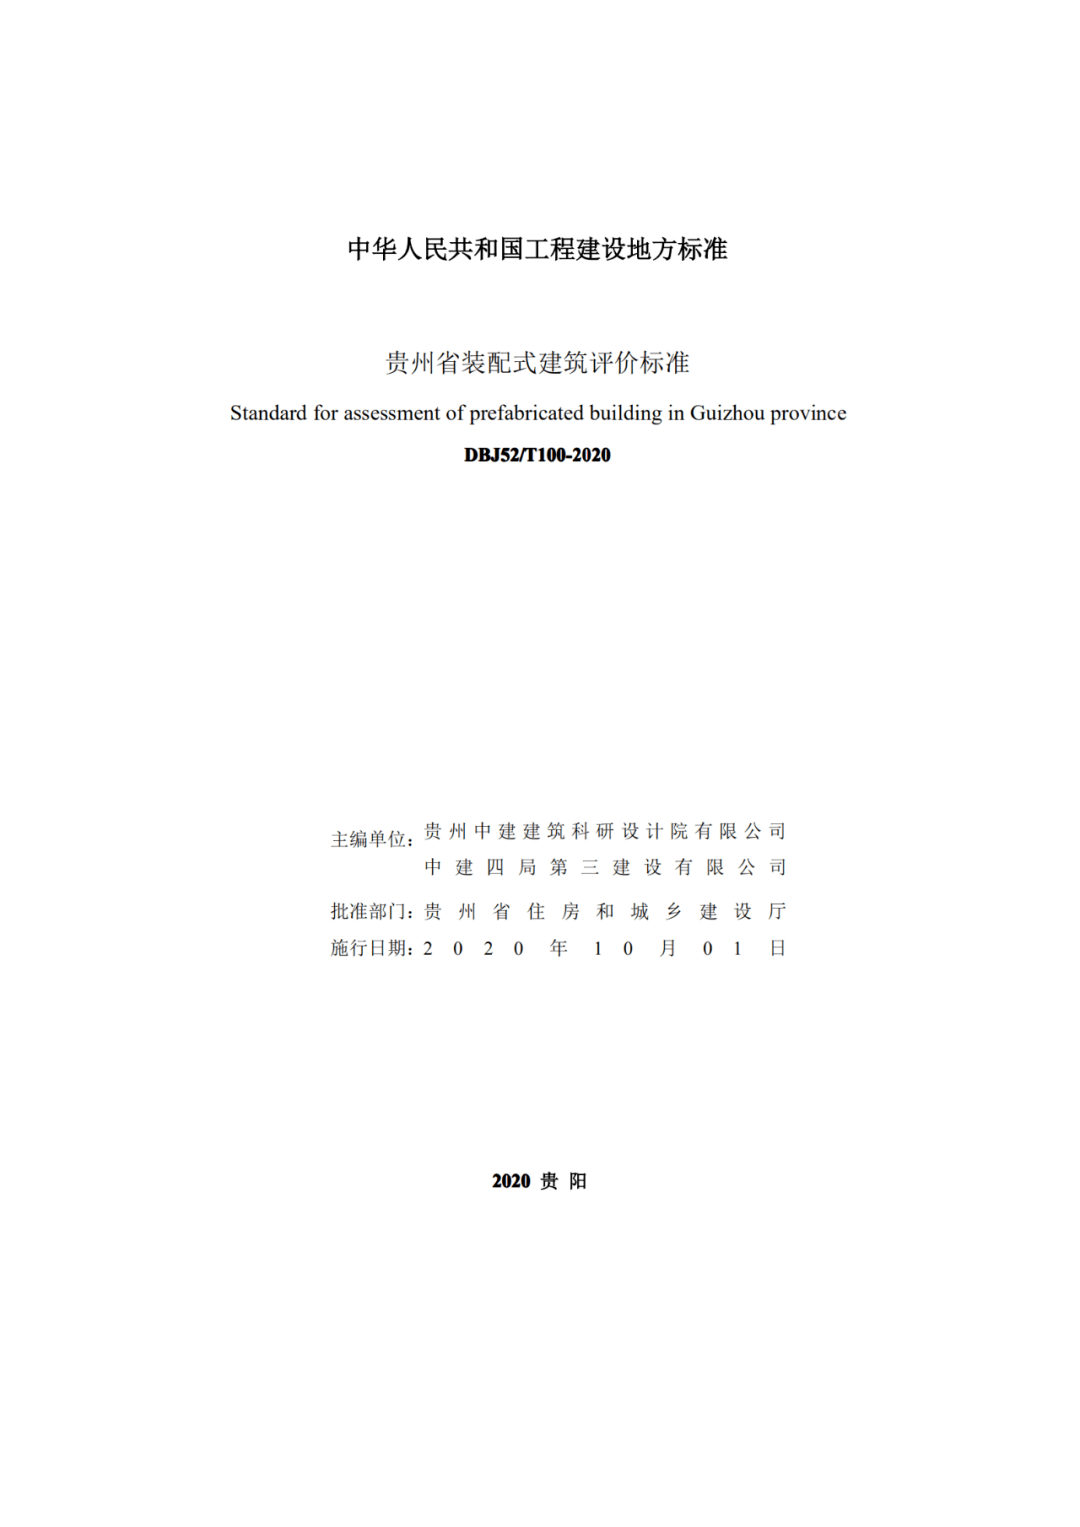 
《贵州省装配式修建评价尺度》公布 10月1日起实施“亚博全站APP官网登录”(图2)